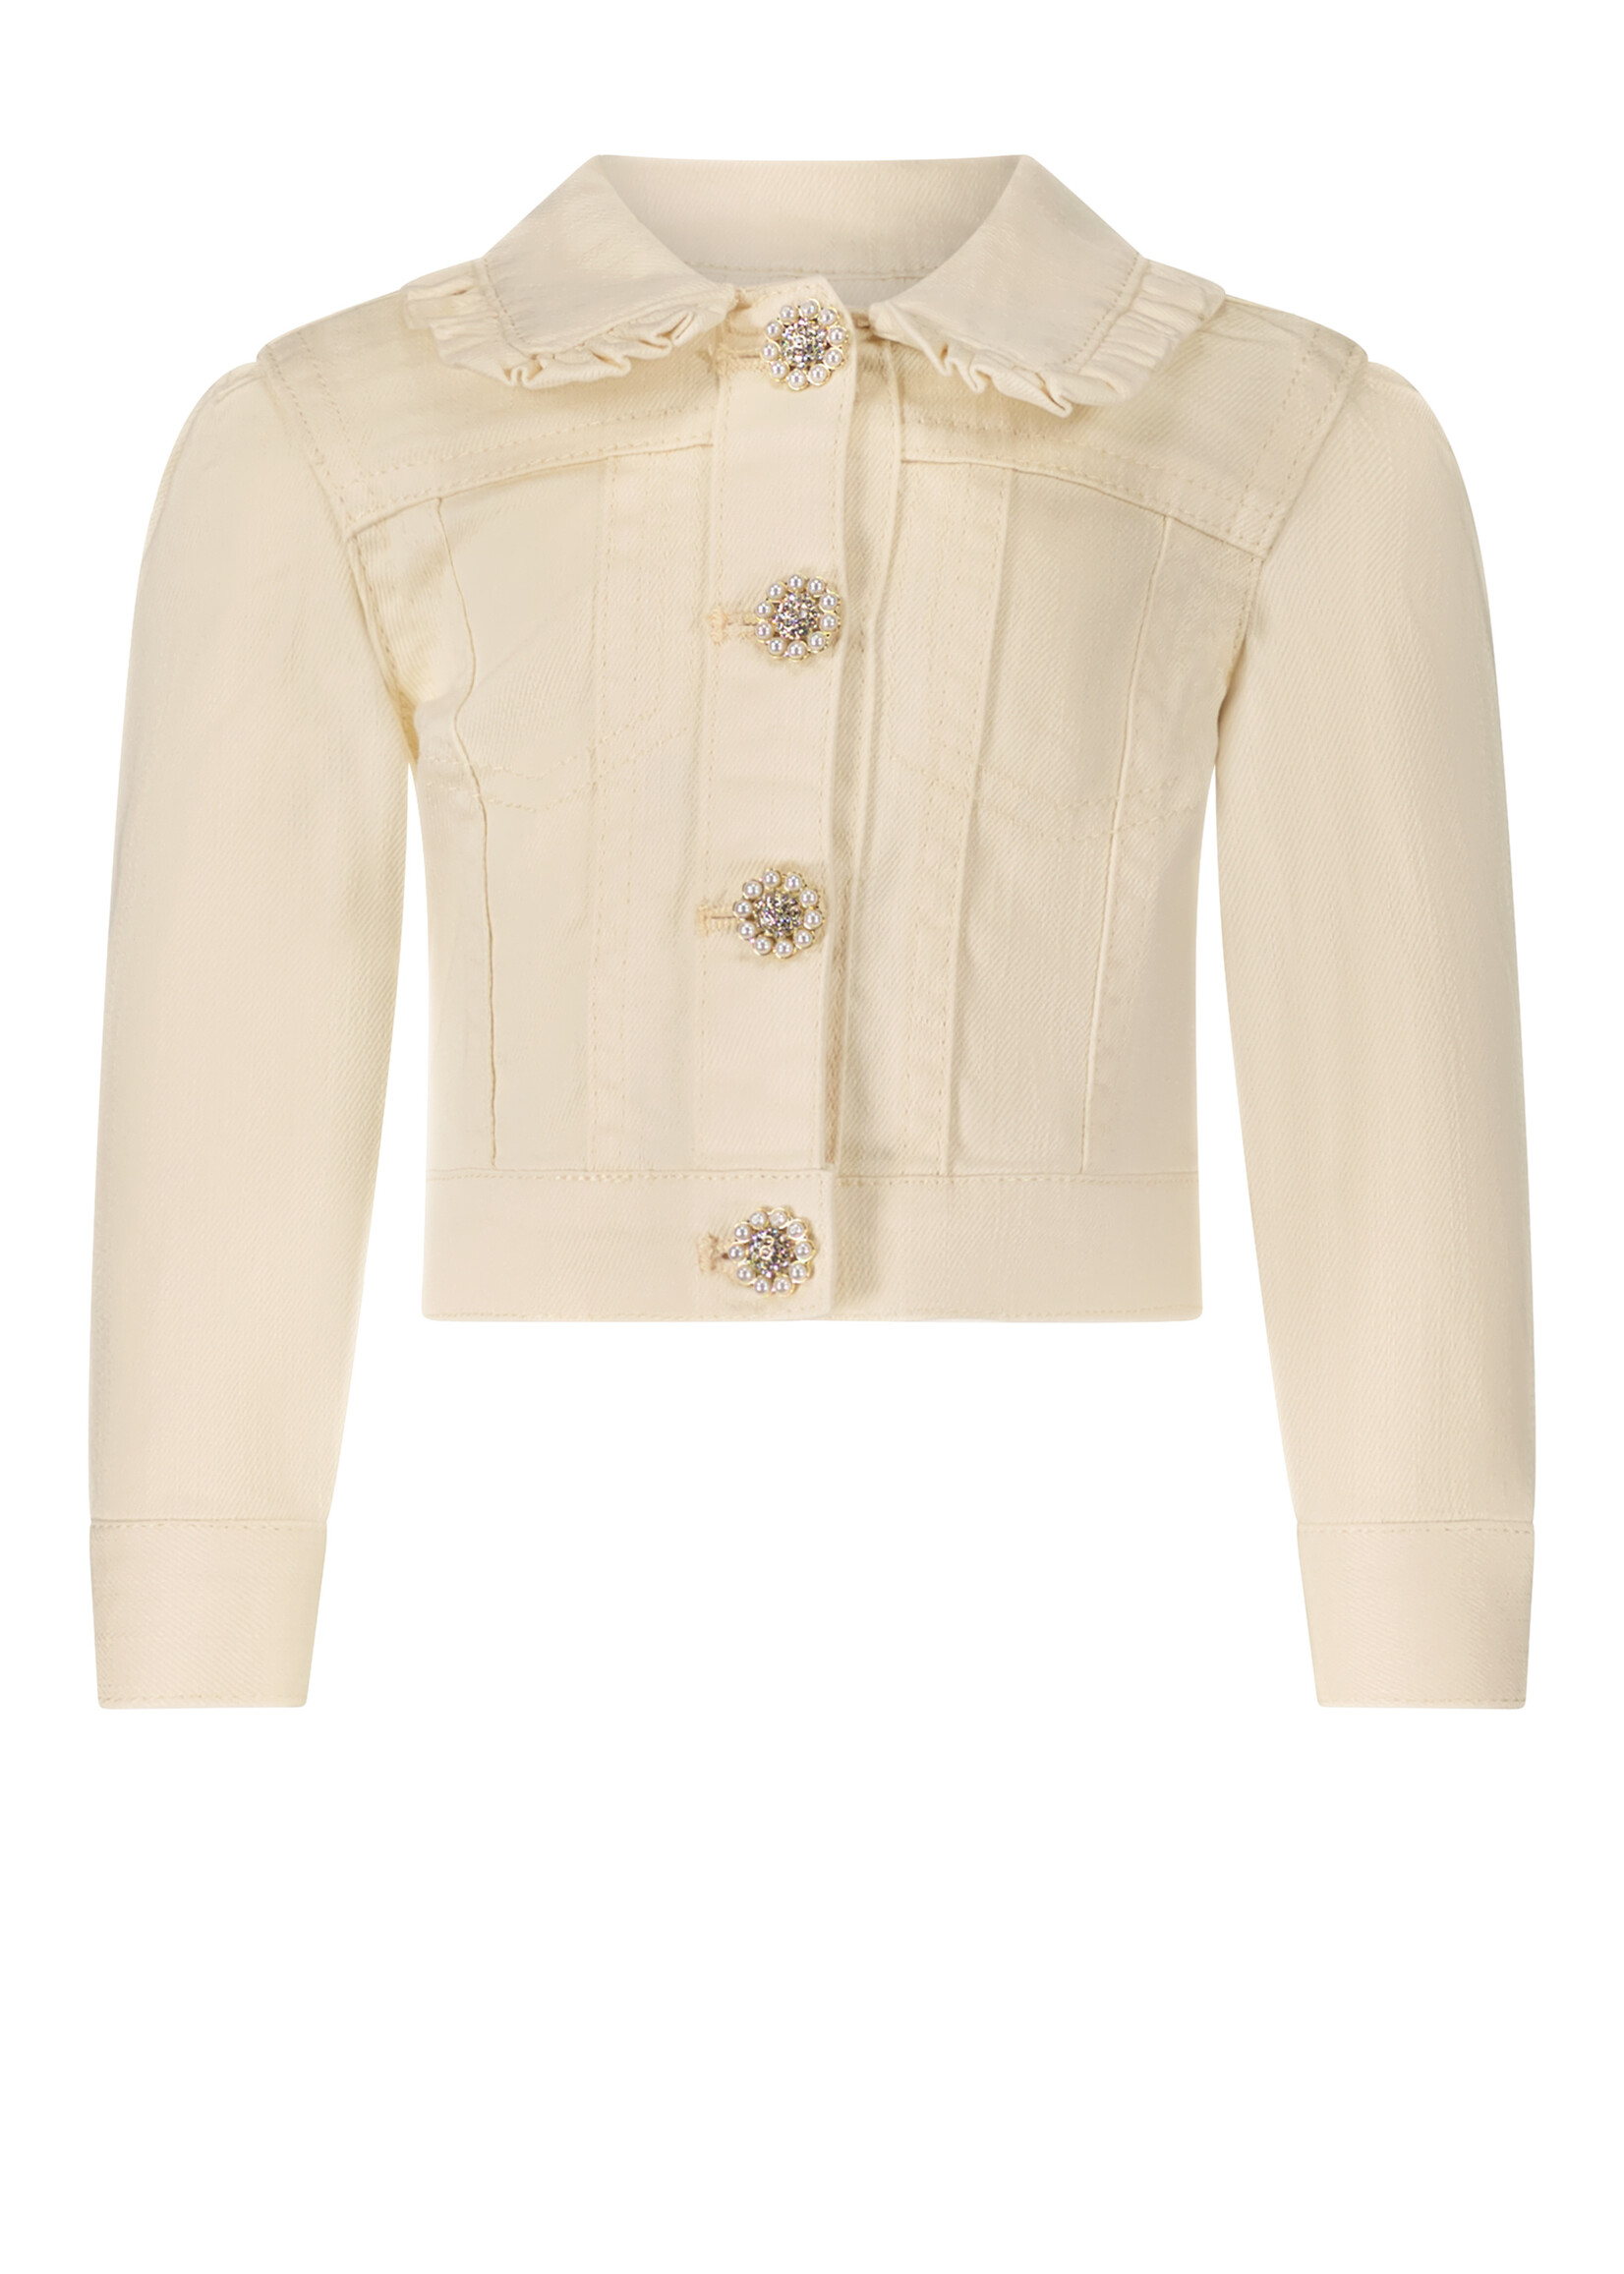 Le Chic Girls Baby C312-7182 ALIDA ruffled collar jacket Pearled Ivory